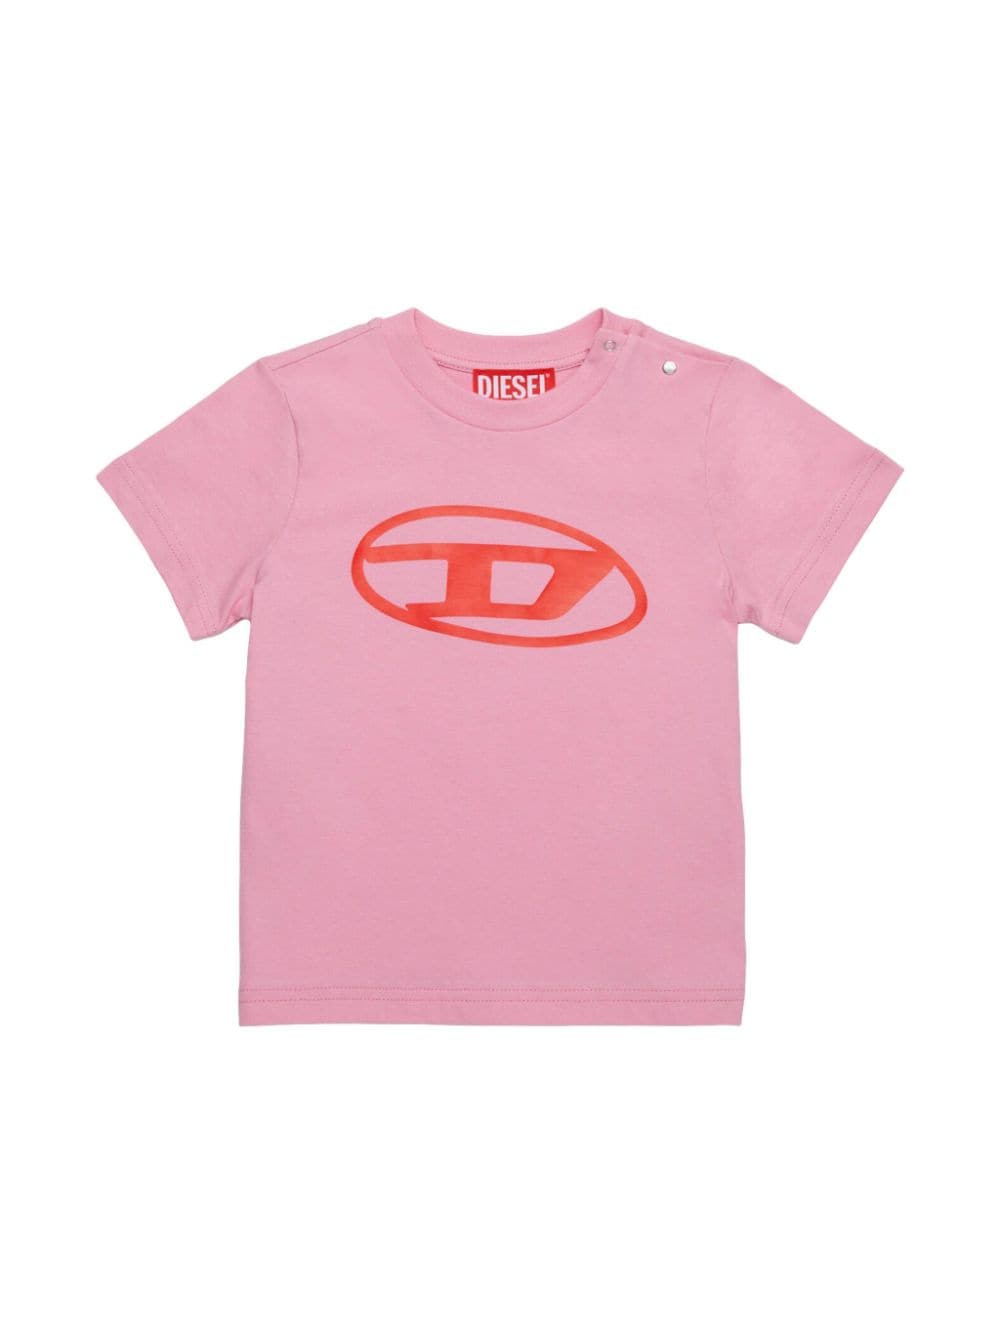 Diesel Kids Oval-D logo t-shirt - Pink von Diesel Kids